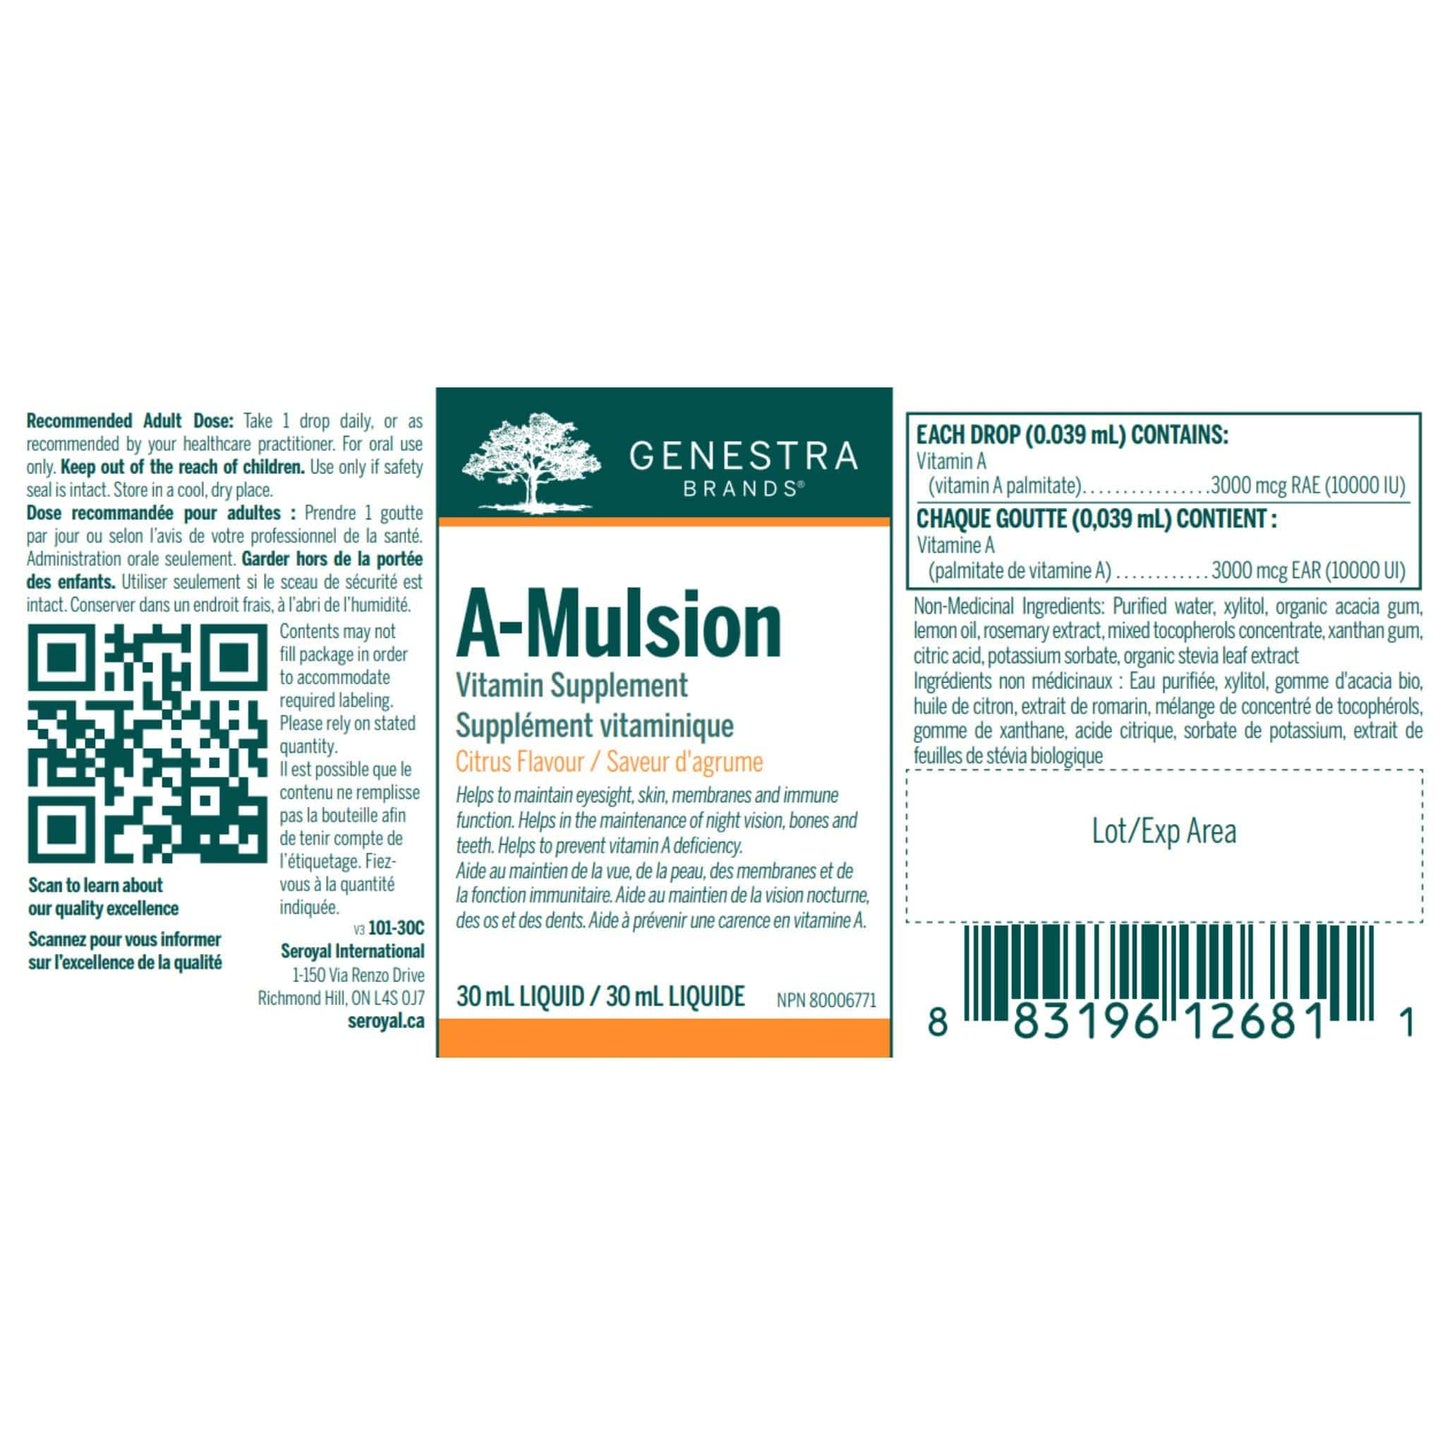 Genestra A-Mulsion 30ml Liquid - Nutrition label